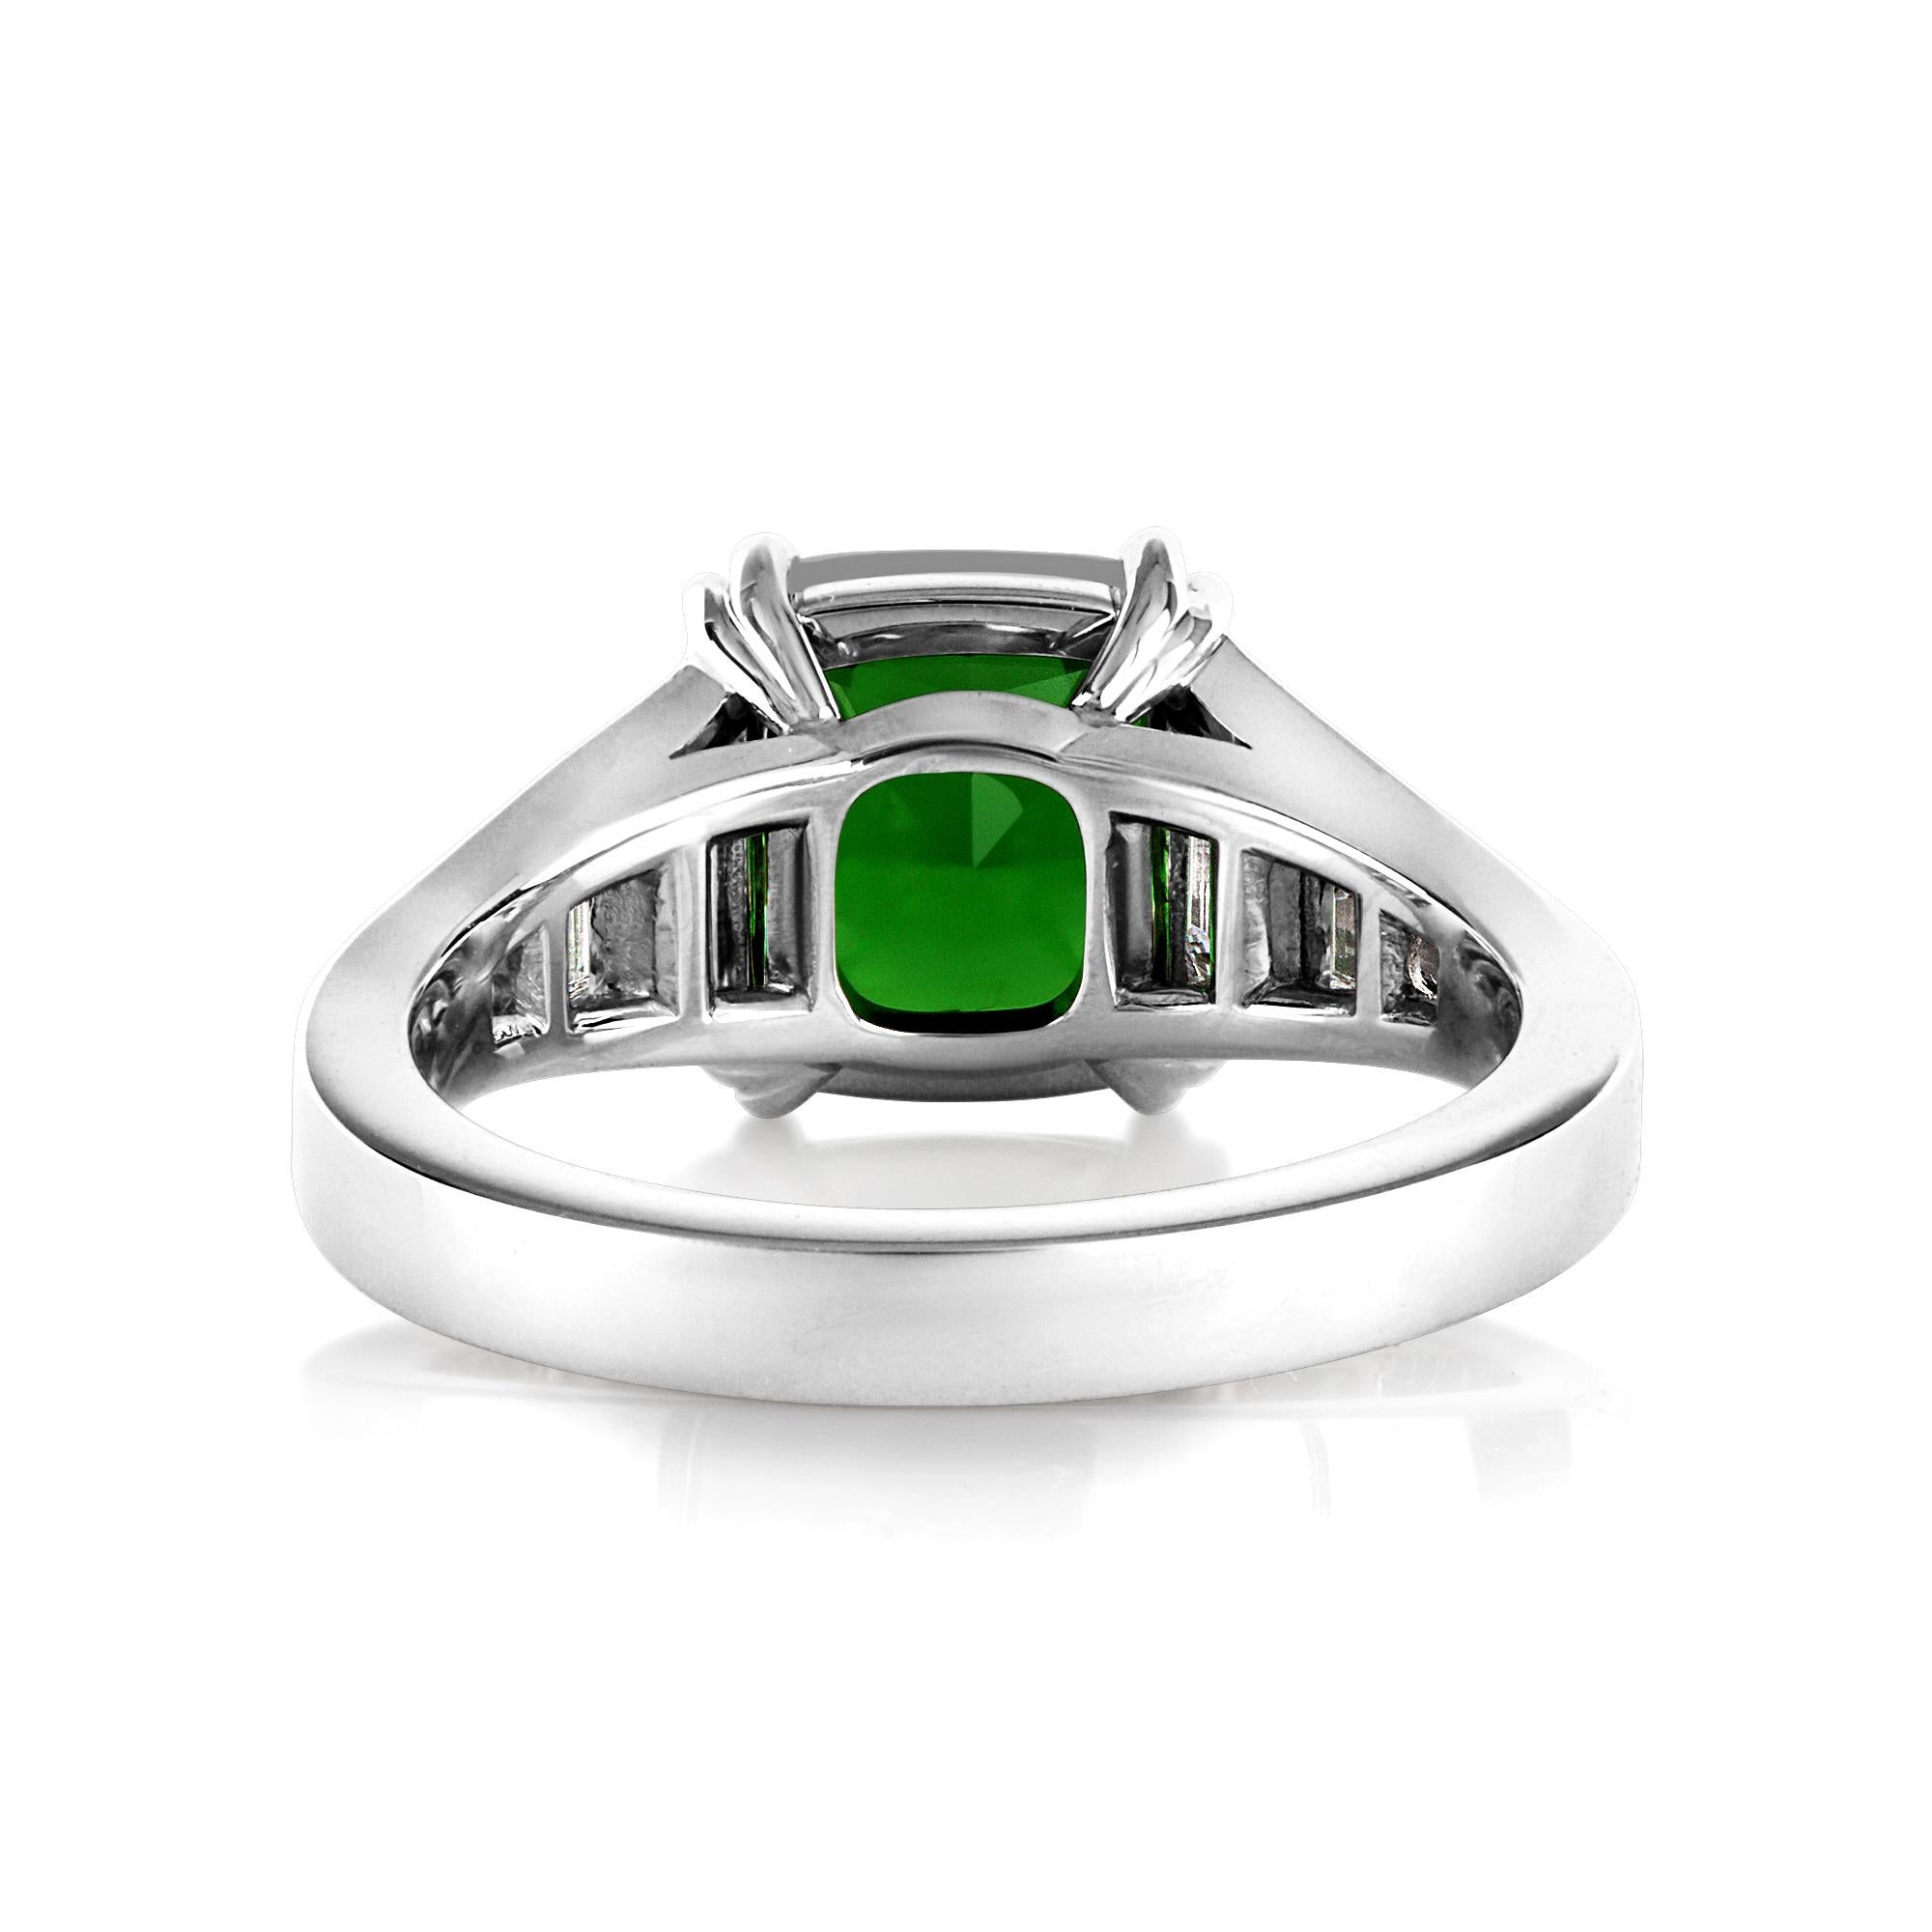 vivid green diamond